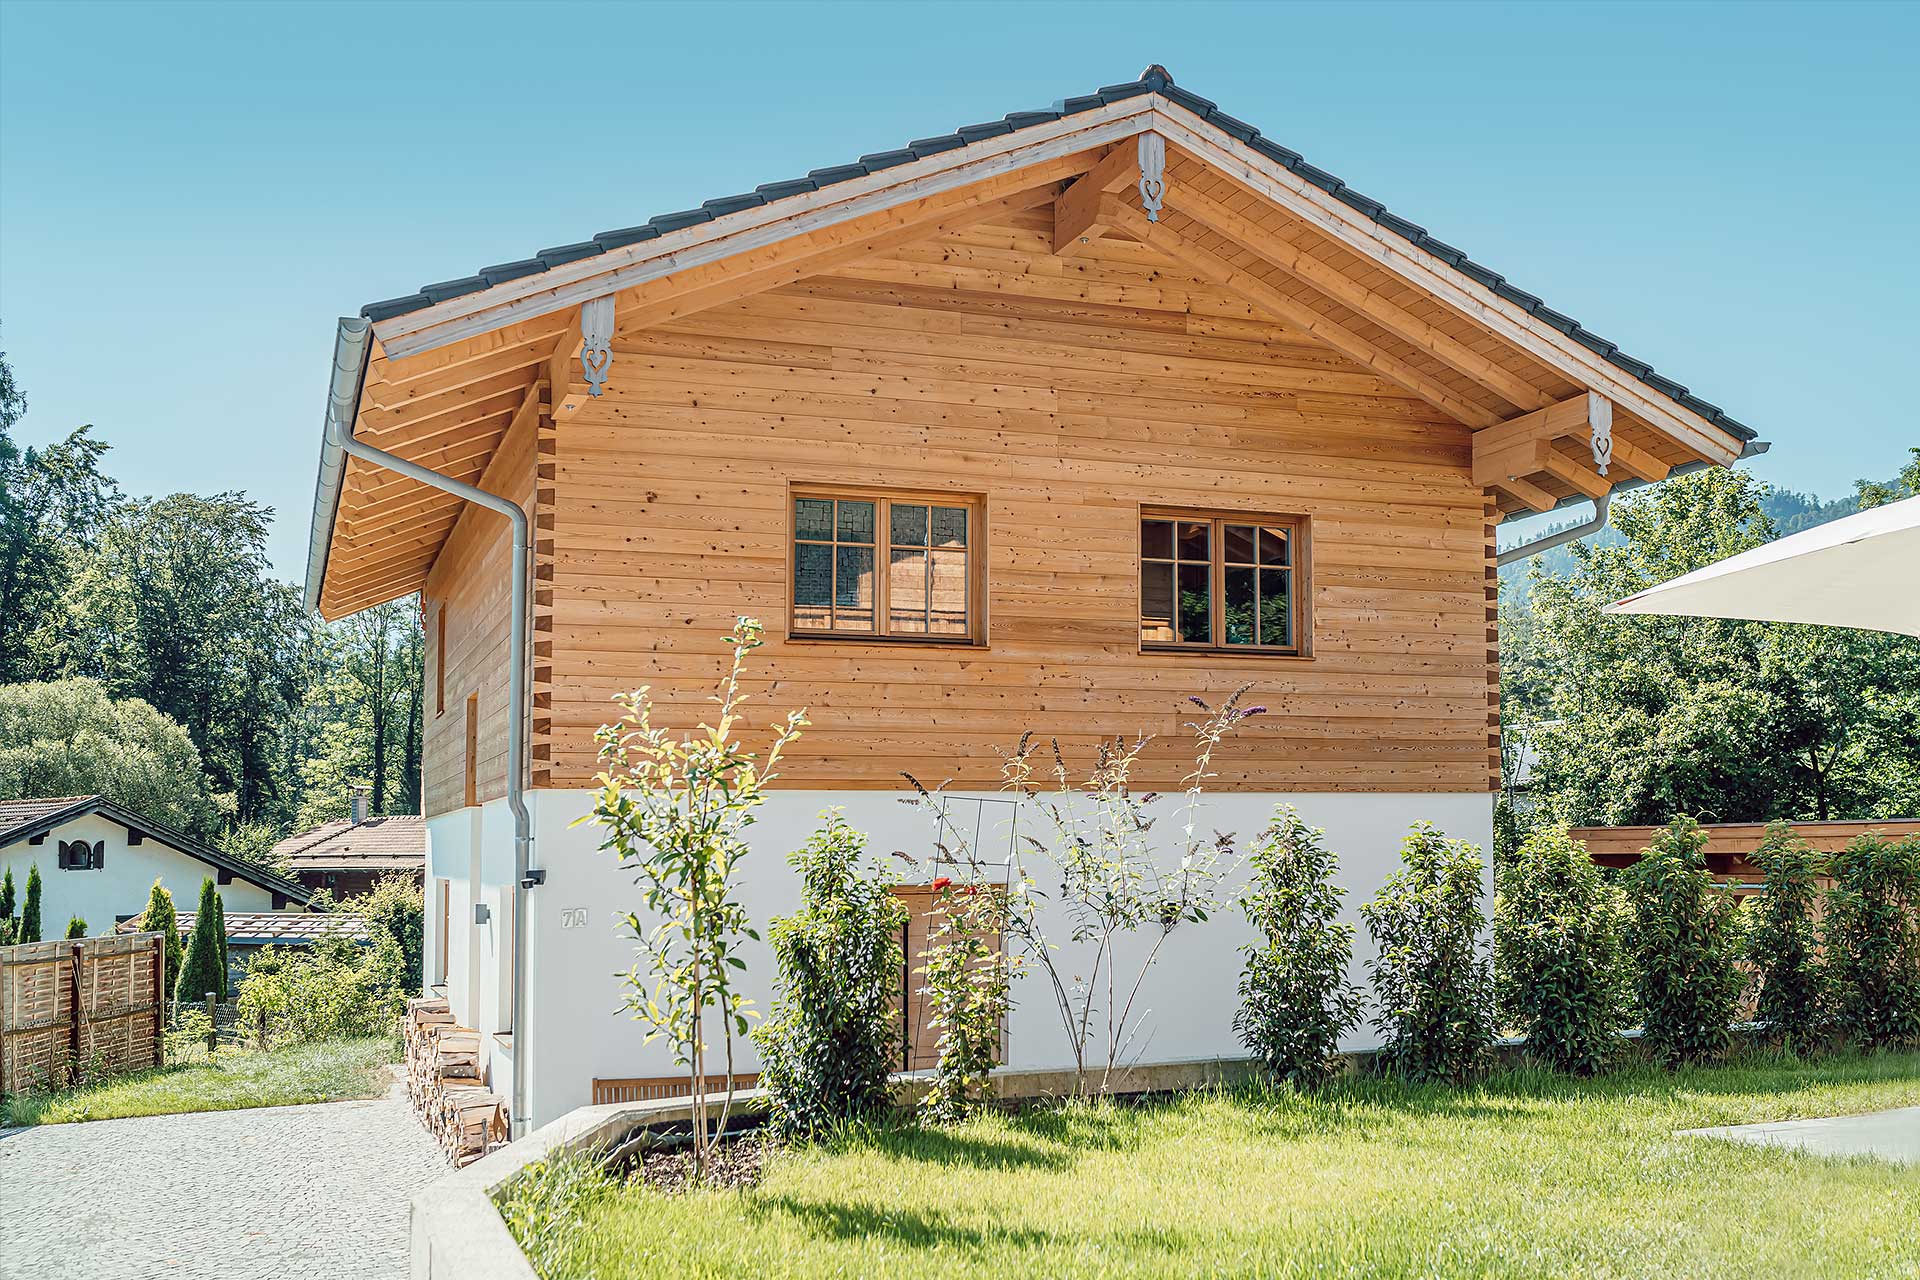 Schlüsselfertiges Einfamilienhaus mit Holzdachstuhl aus Fichte (Untersichten lasiert)